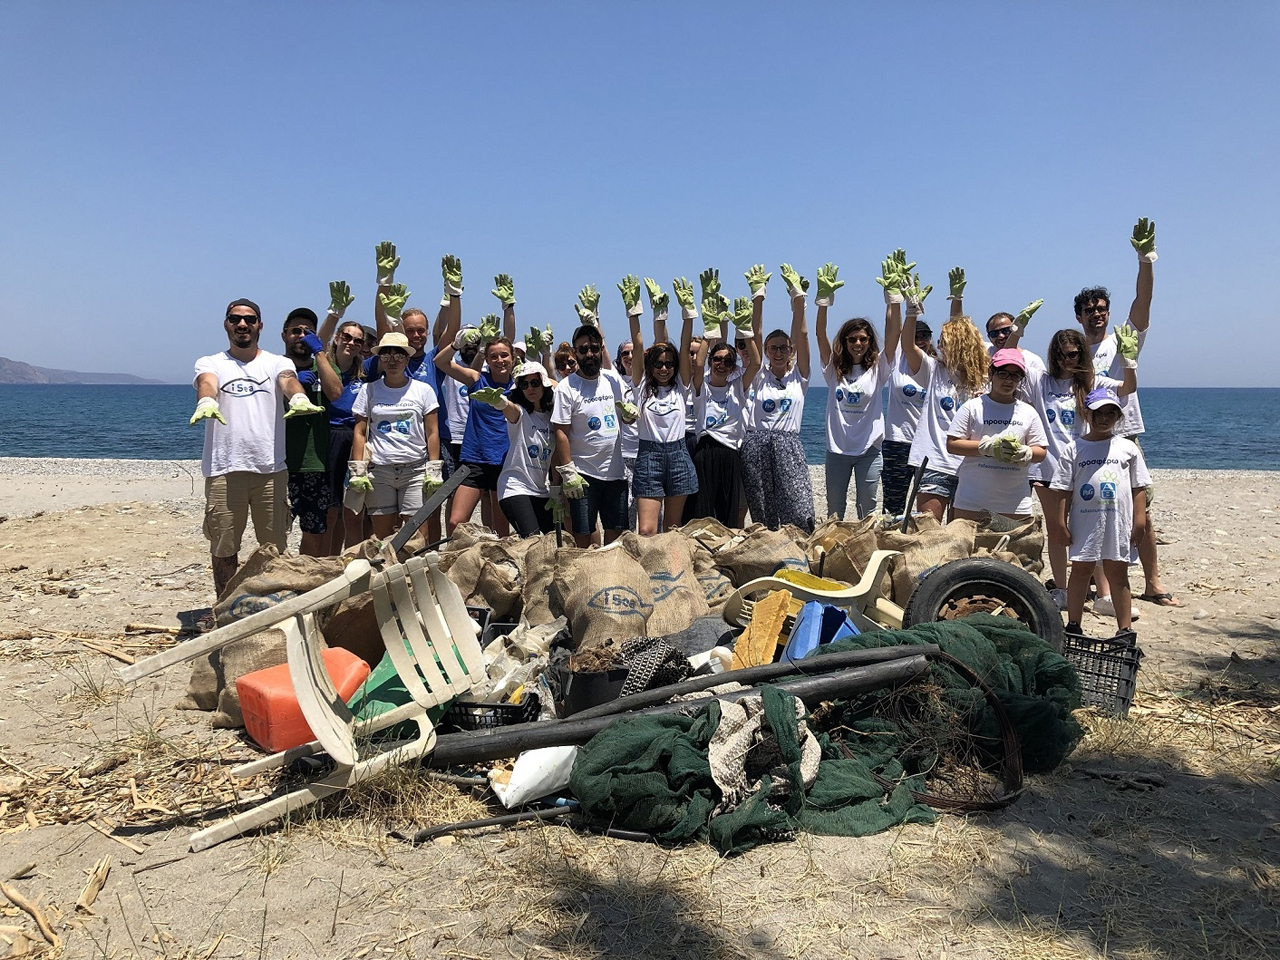 ​Η P&G και η ΑΒ Βασιλόπουλος μέσα από το πρόγραμμα «Προσφέρω», μαζί με την περιβαλλοντική οργάνωση iSea και την ενεργό συμμετοχή όλων μας, ολοκλήρωσαν τις δράσεις καθαρισμού 40 ακτών σε τρία ελληνικά νησιά.